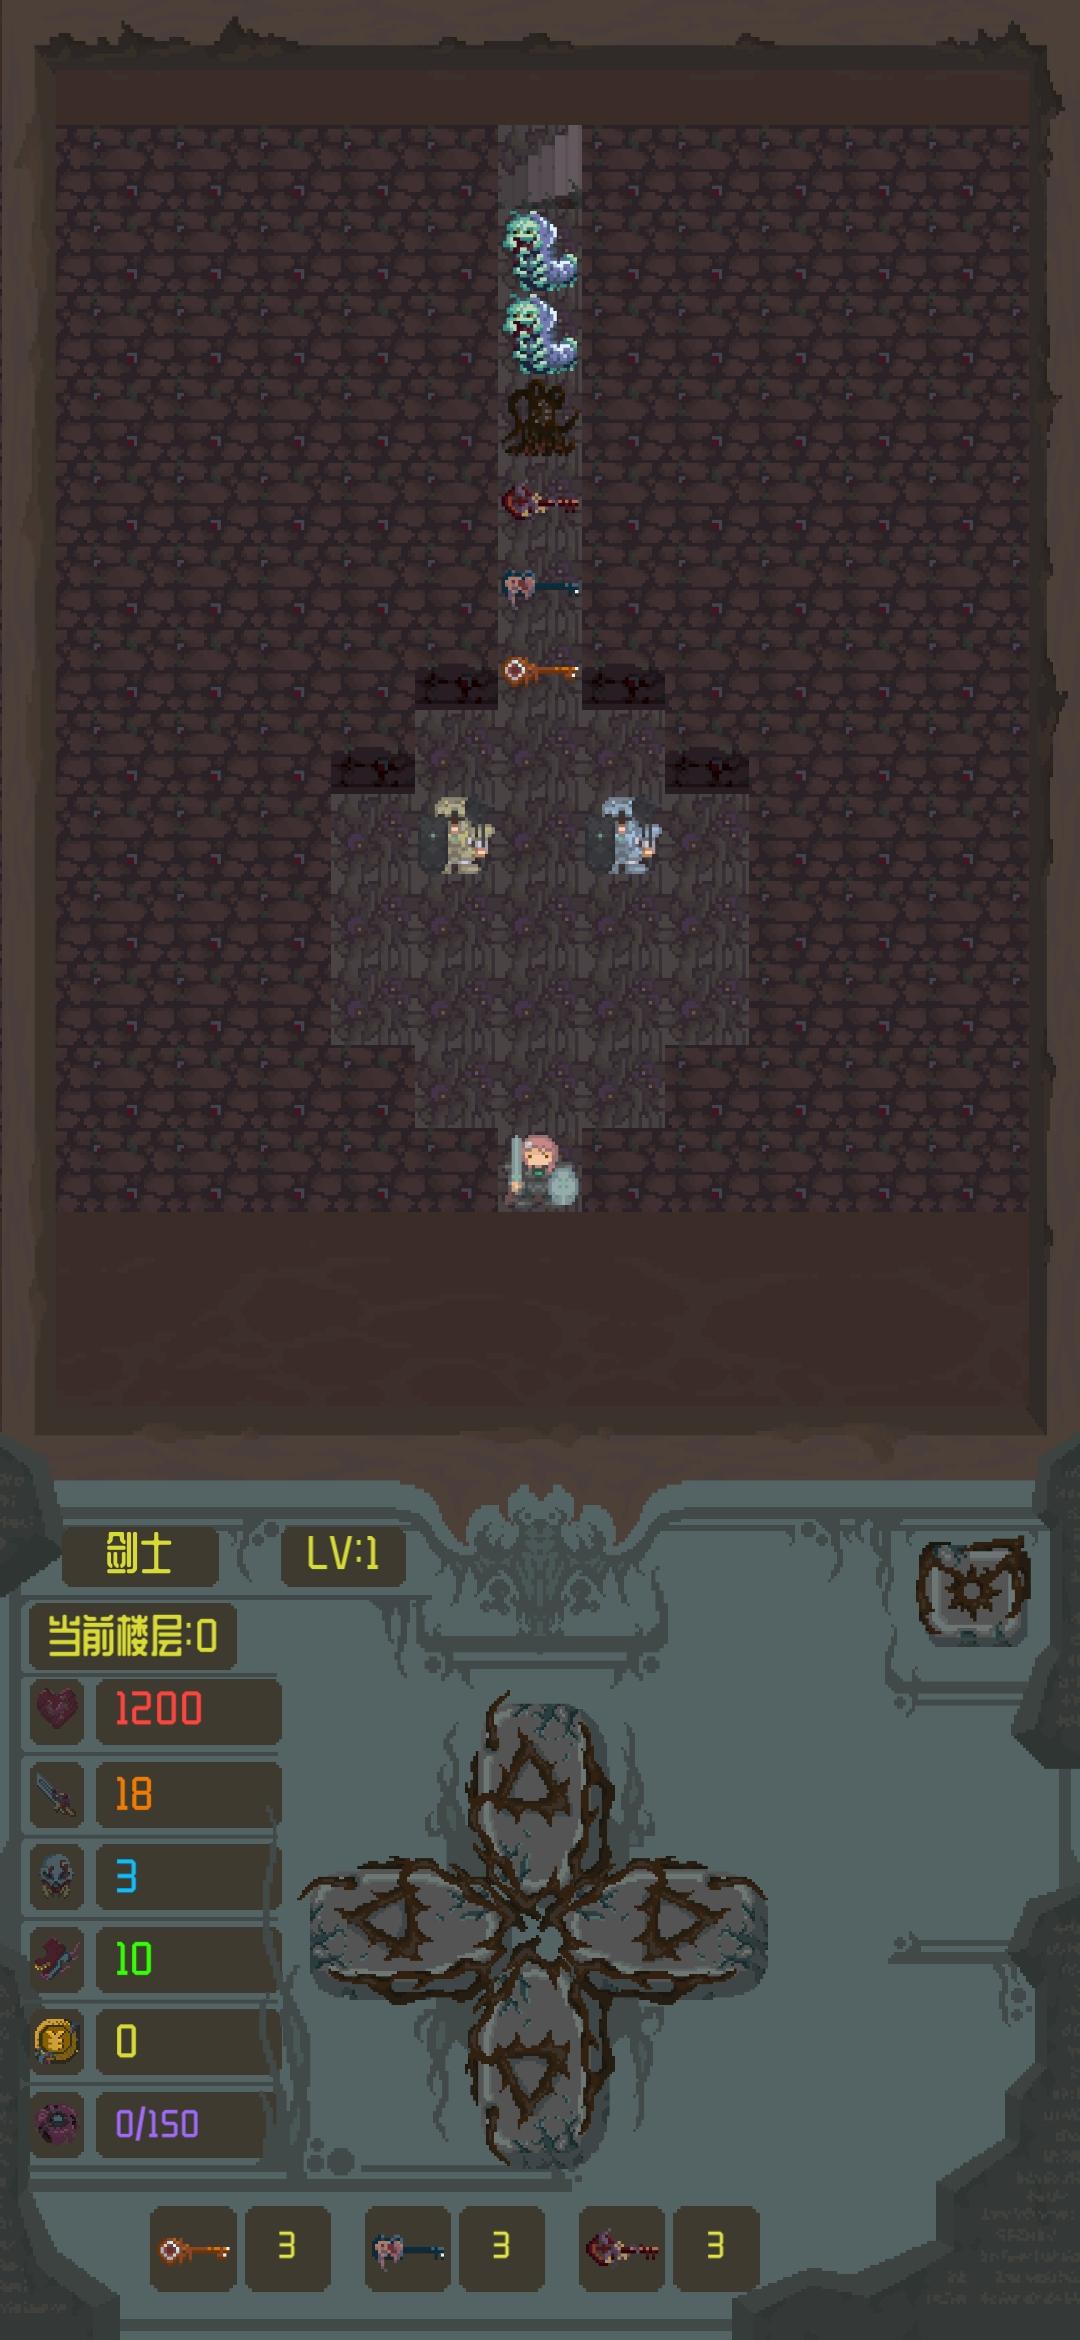 Screenshot 1 of Putri serangan di menara ajaib 0.1